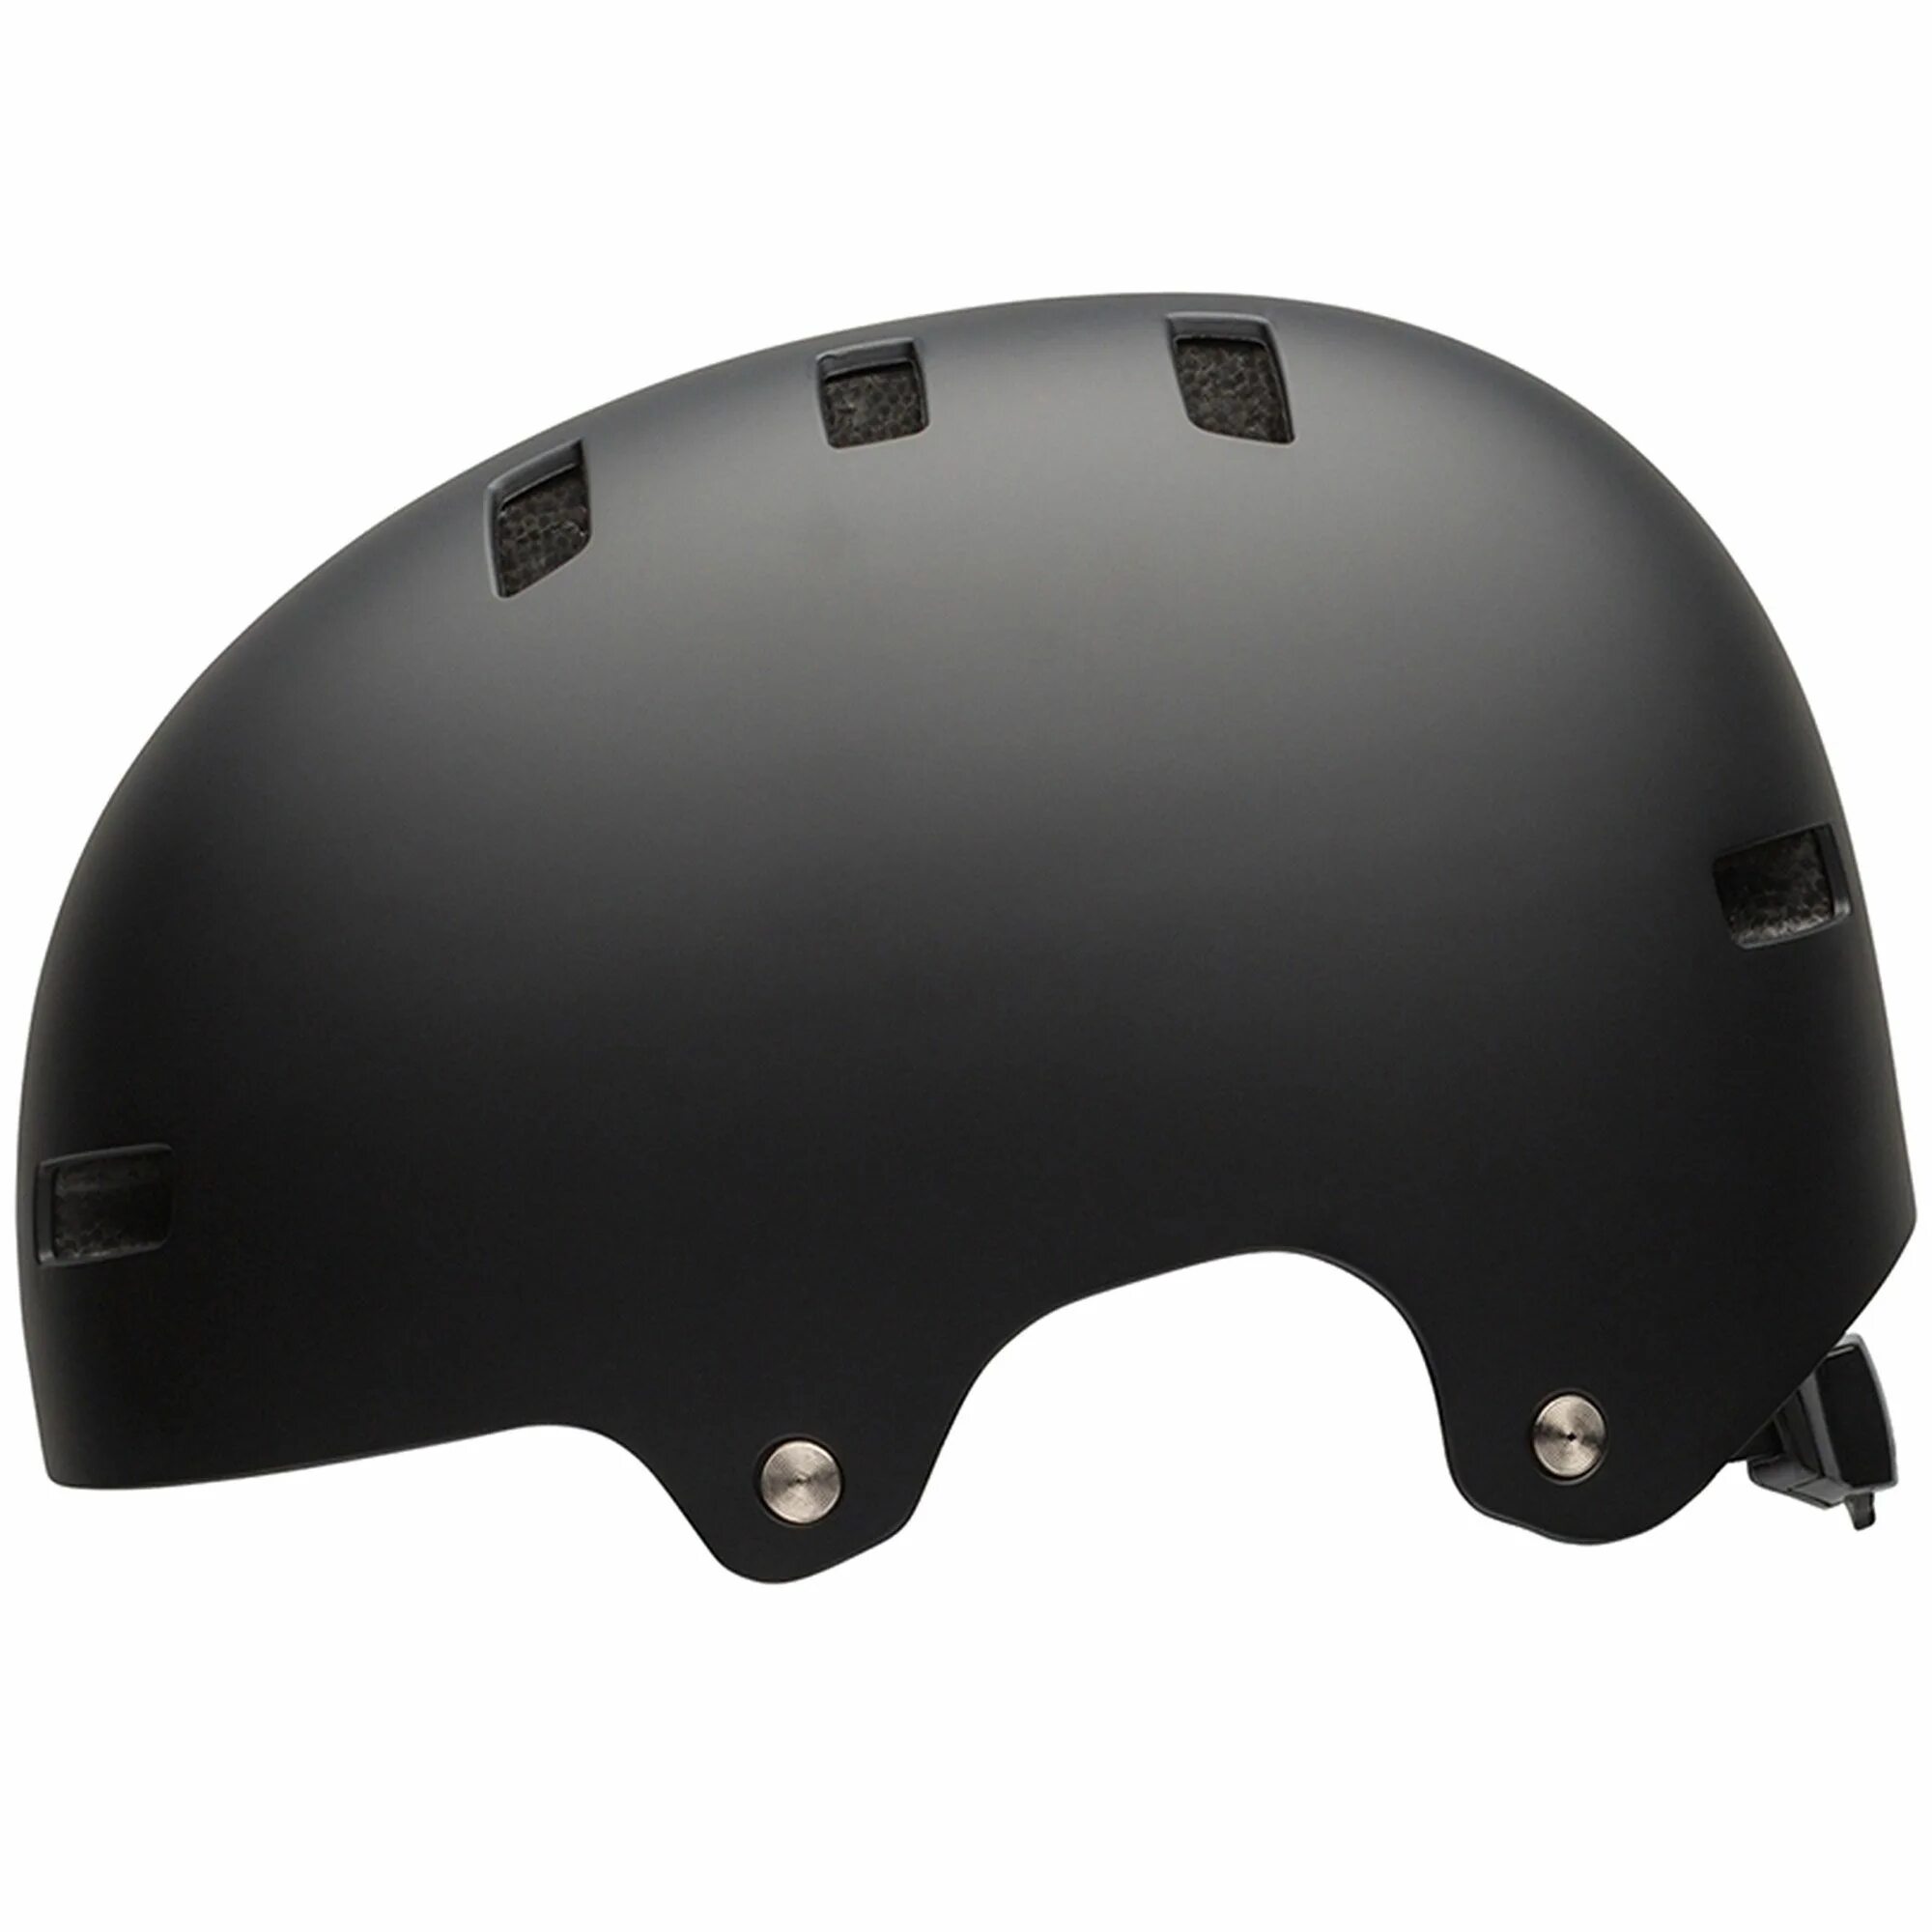 BMX Helmet Bell. ANSI легкий матовый черный защитный каска.